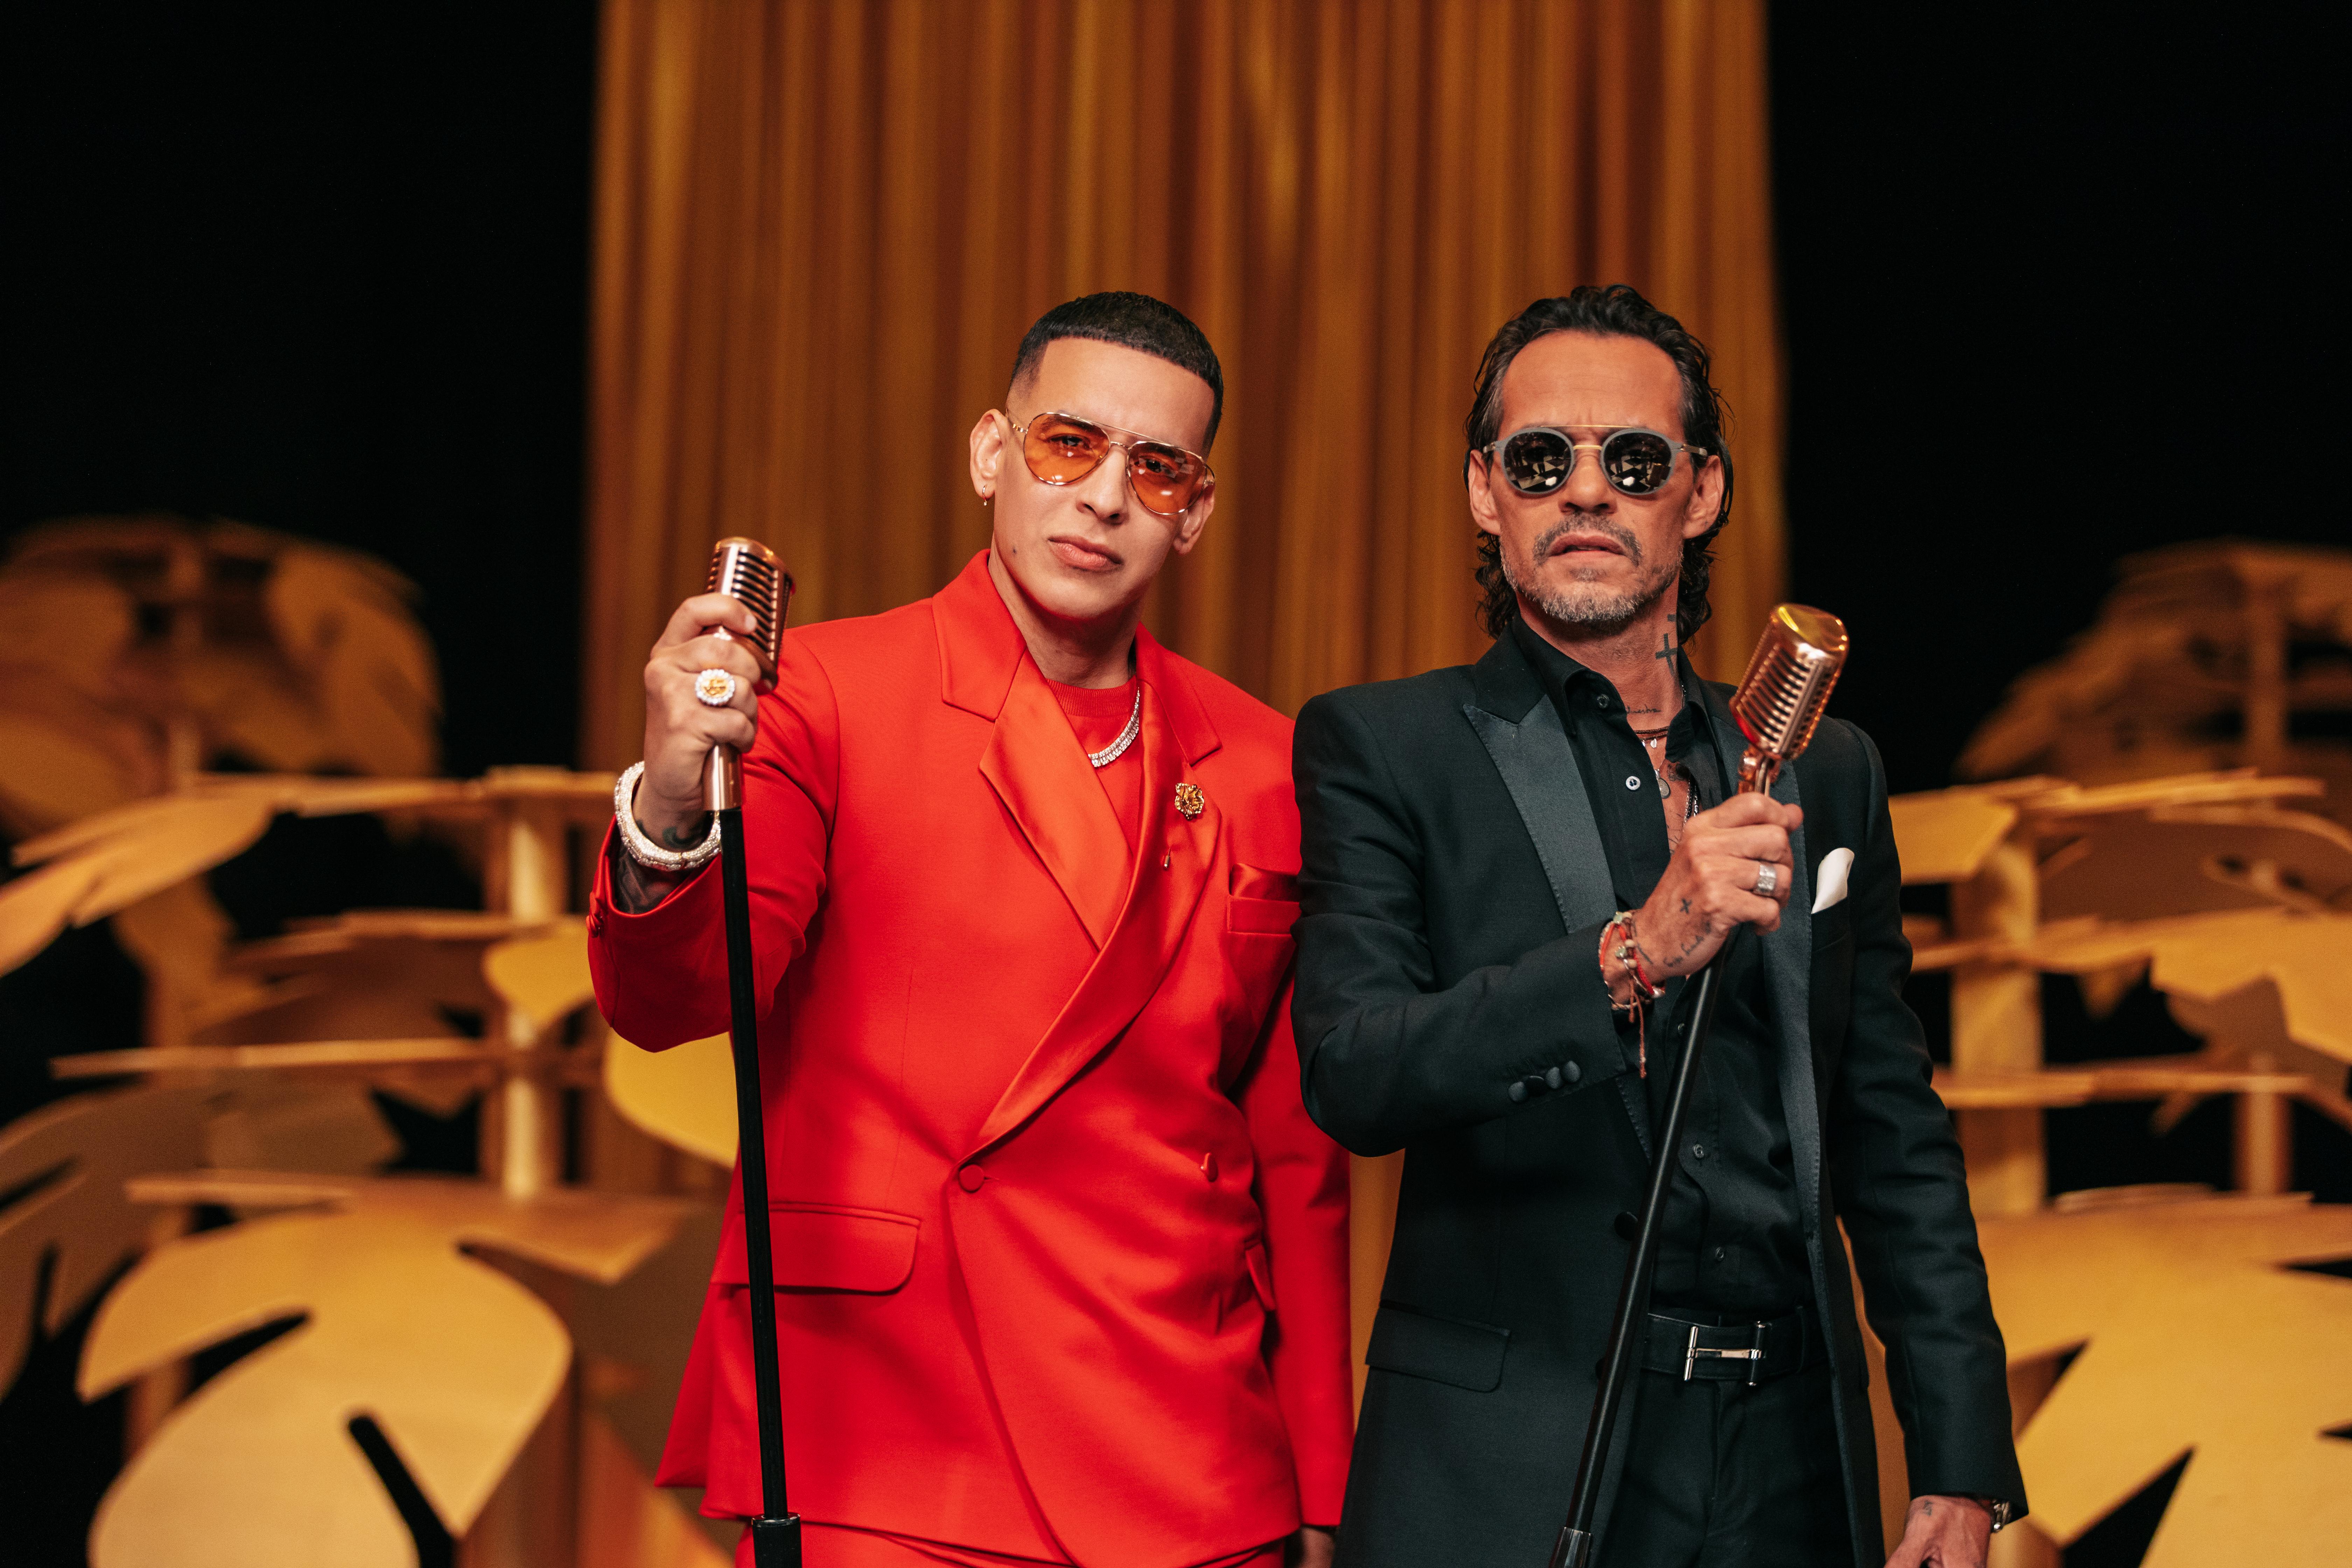 Junto a Marc Anthony: Daddy Yankee se presentará en “Una Noche”